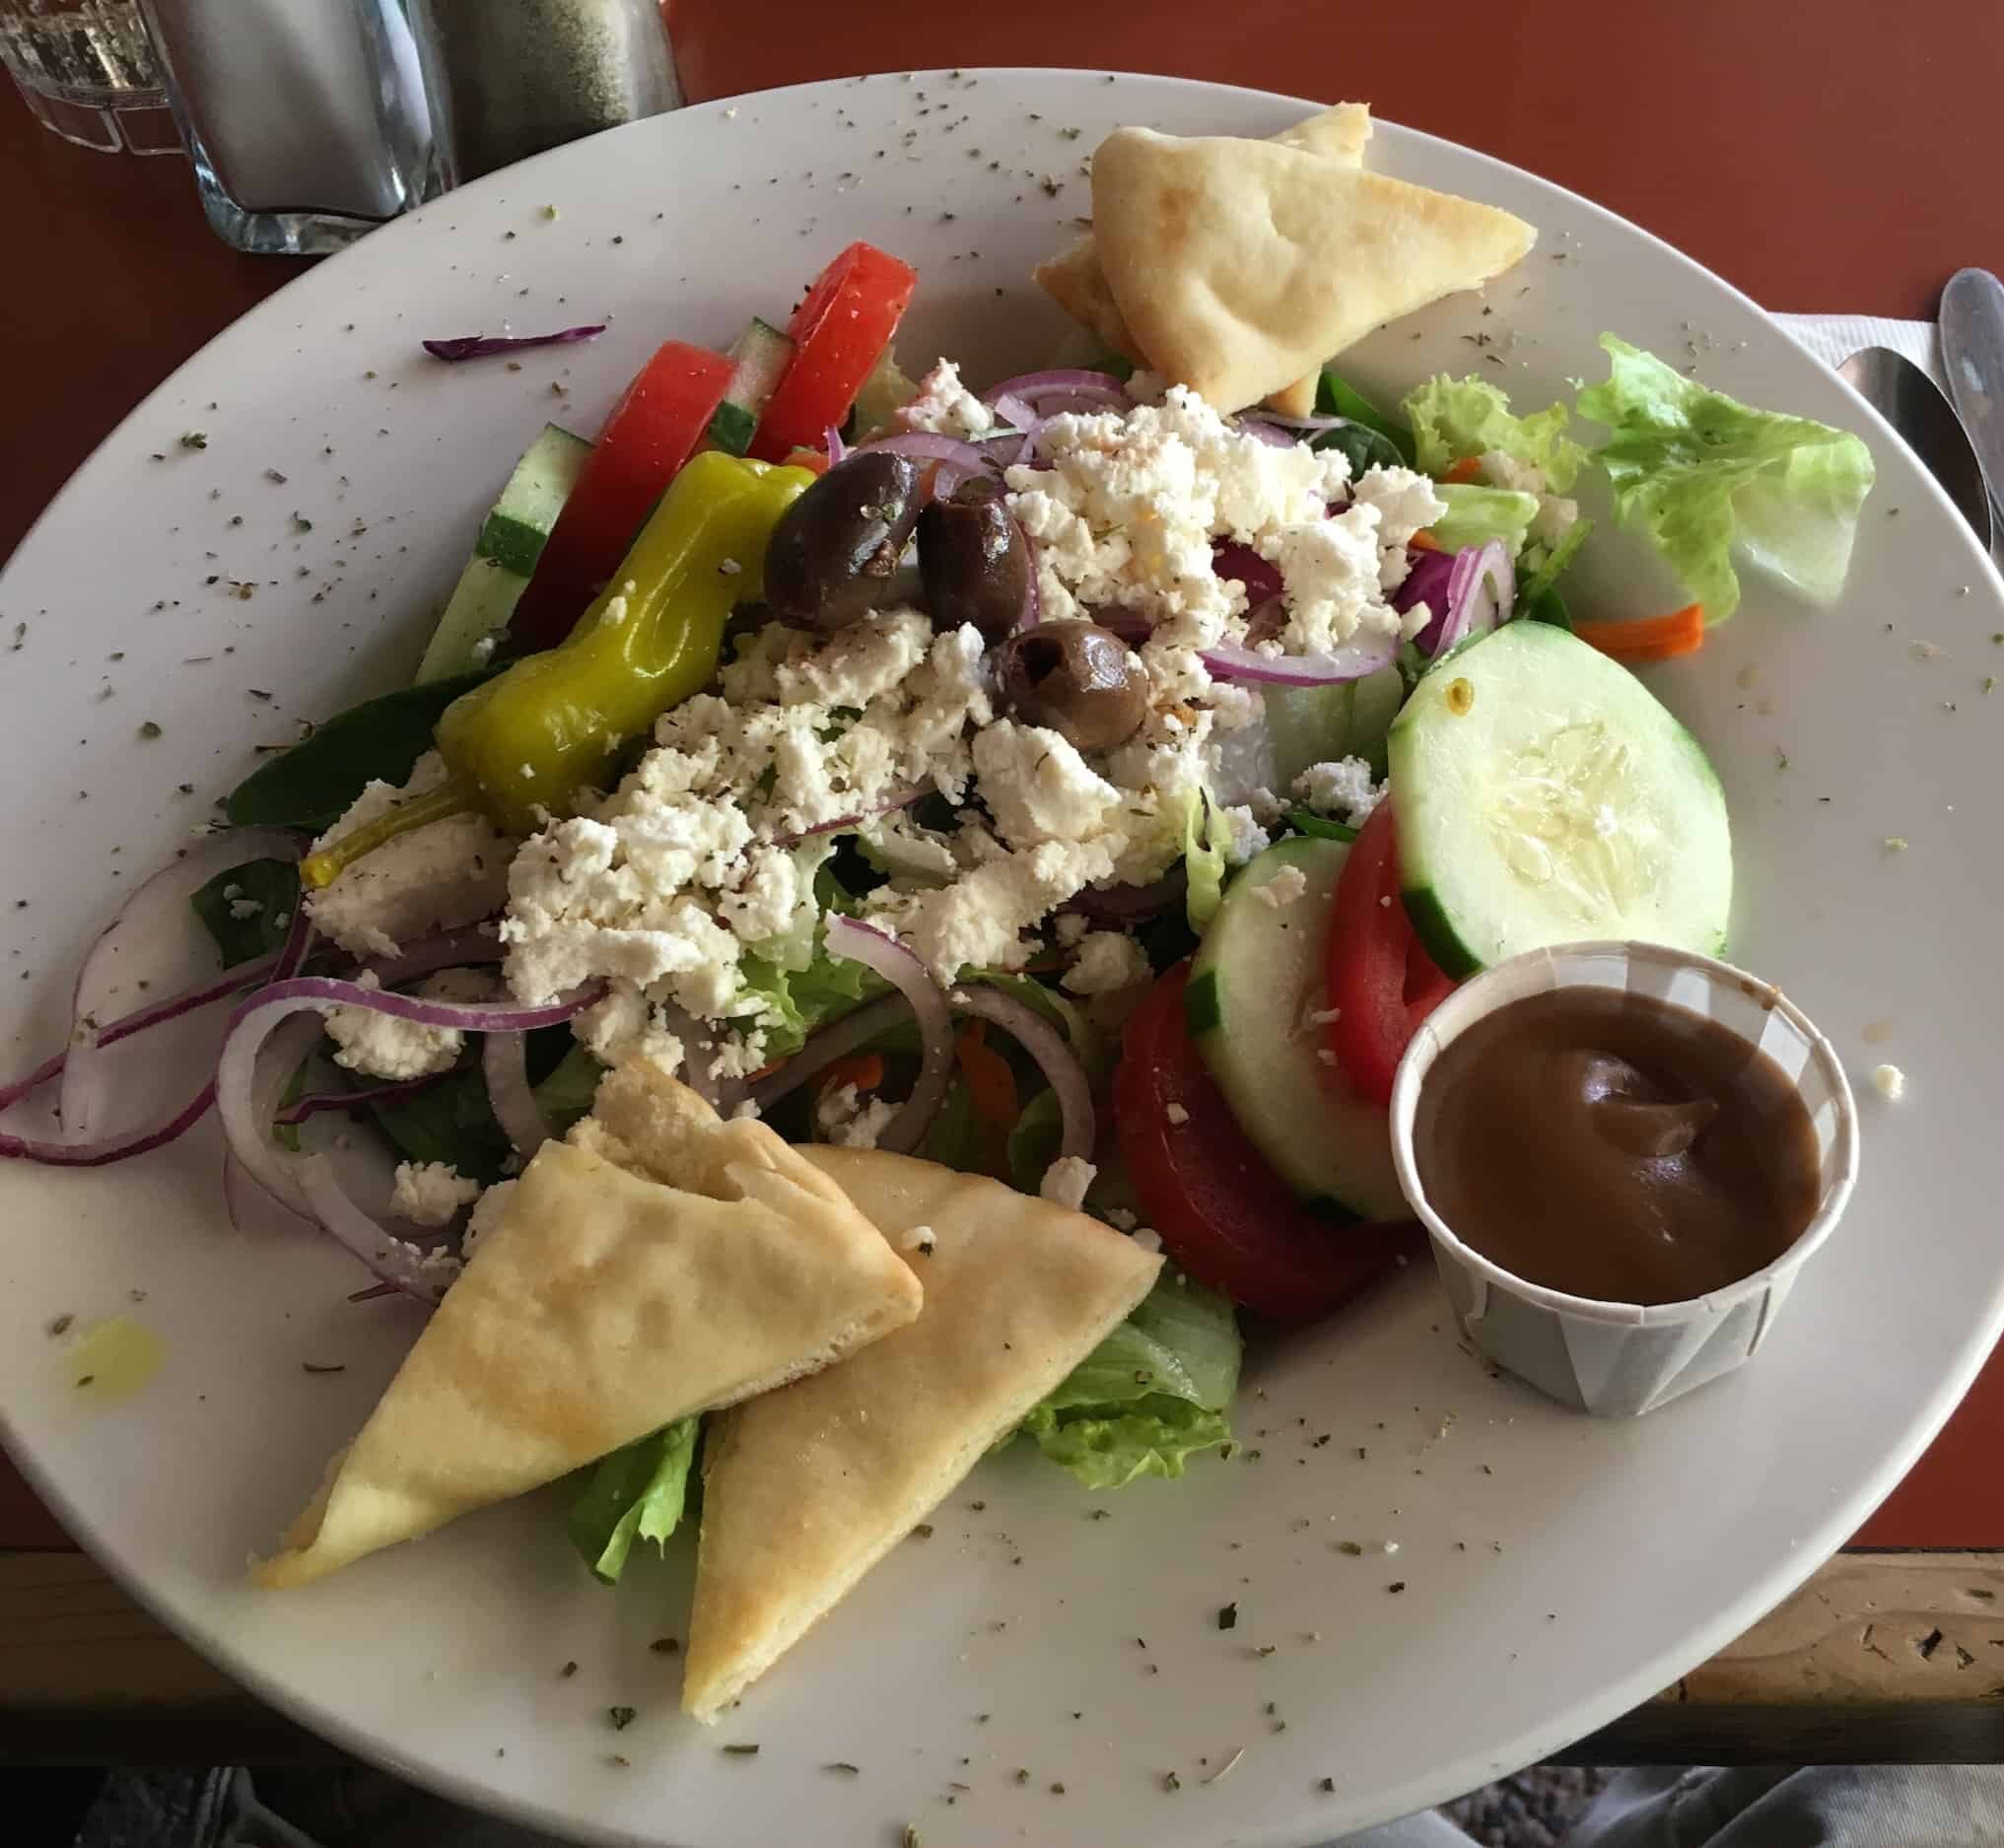 Greek salad at Bent Street Grille